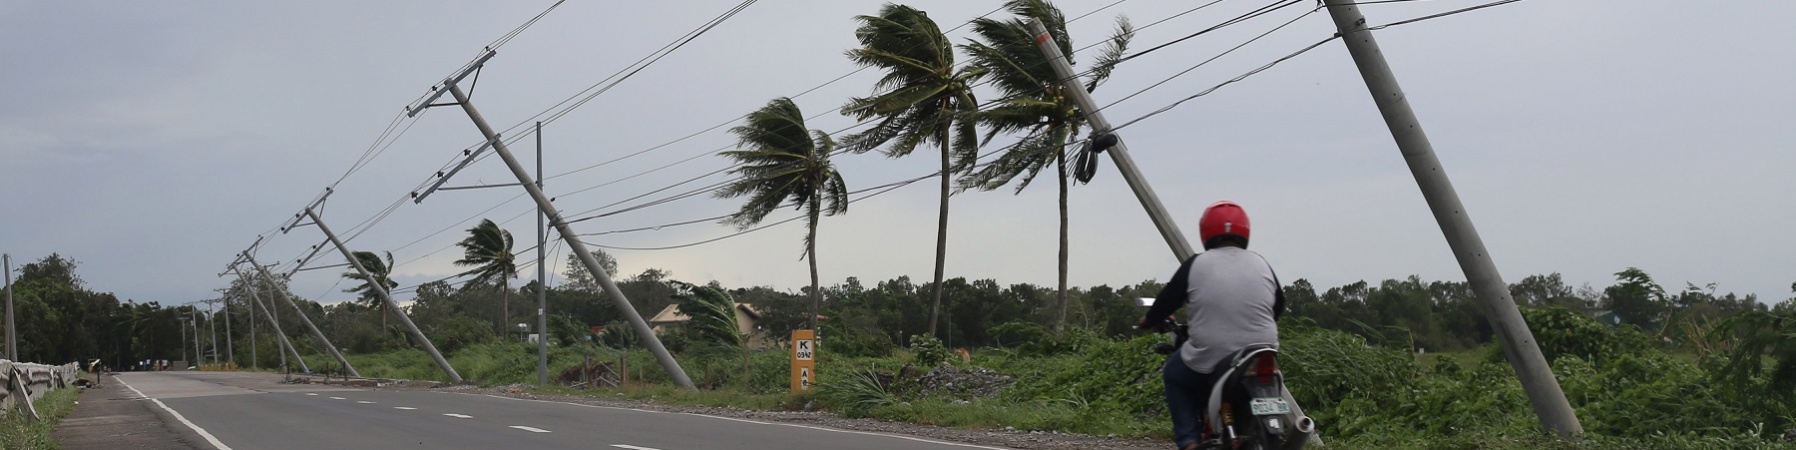 strada con palme piegata da una tempesta e un motorino sulla strada